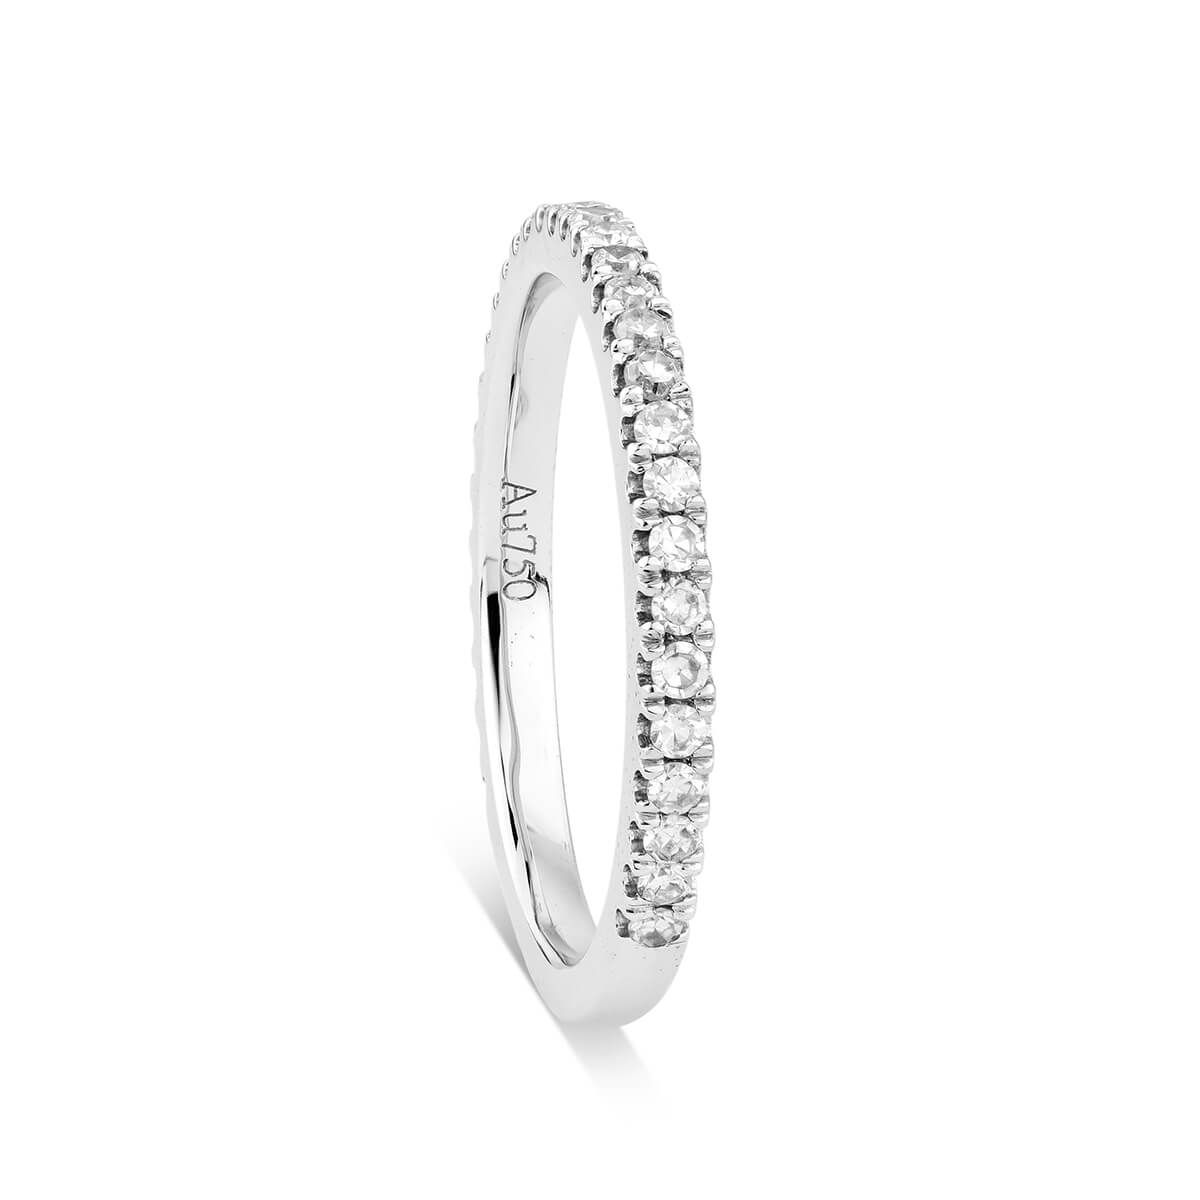 White Diamond Ring, 0.35 Carat, Round shape, EG_Lab Certified, J5926074841